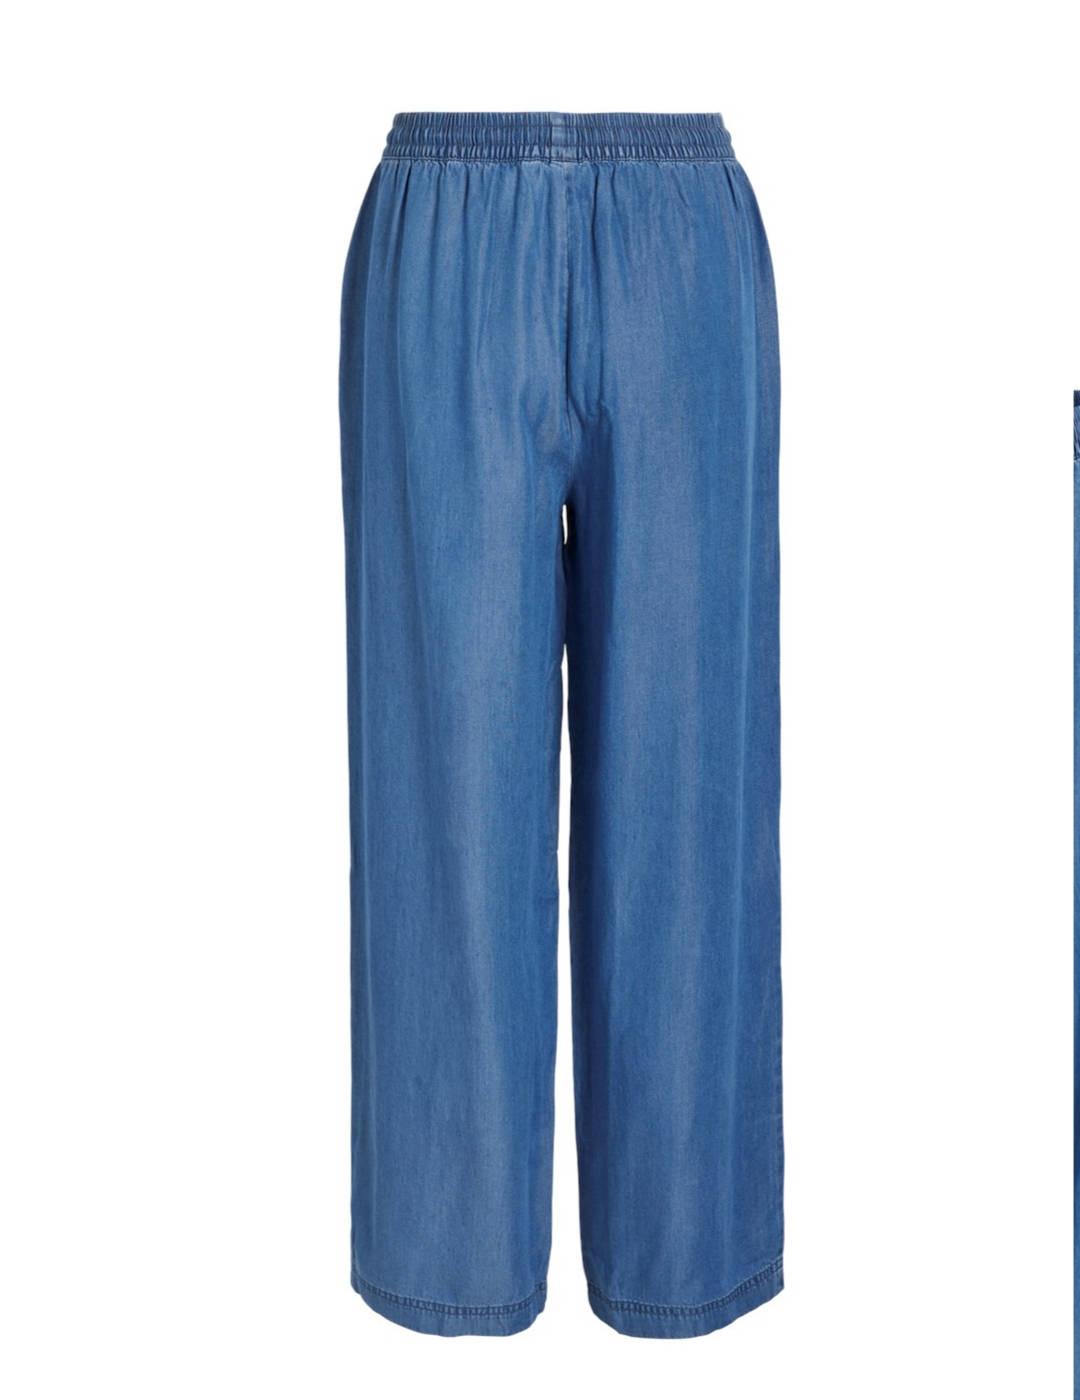 GUESS Los Angeles Vaqueros Mujer Talla 36 Pantalones Azul Algodón